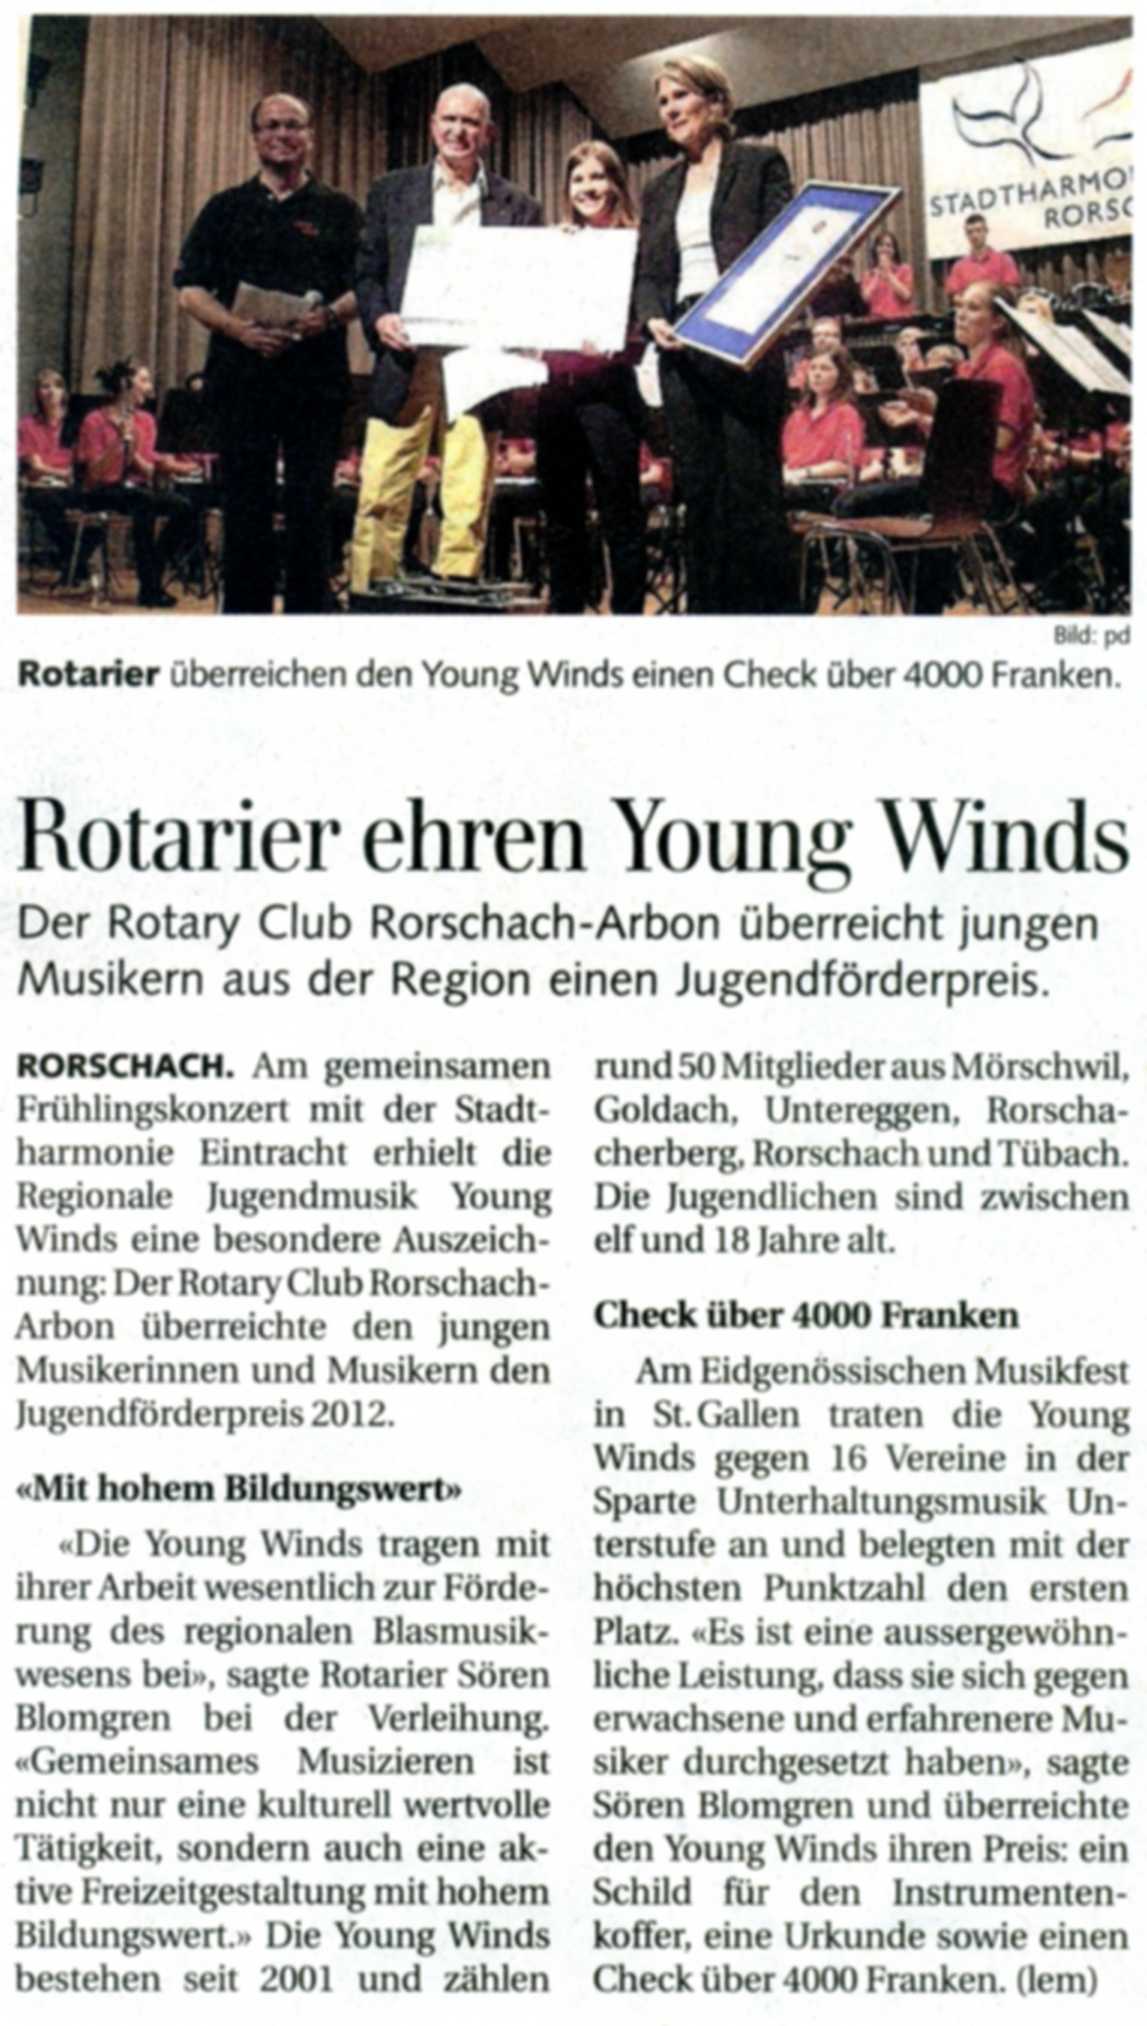 Bericht über die Verleihung des Förderpreises des Rotarier Clubs Rorschach-Arbon an die Young Winds während dem Frühlingskonzert